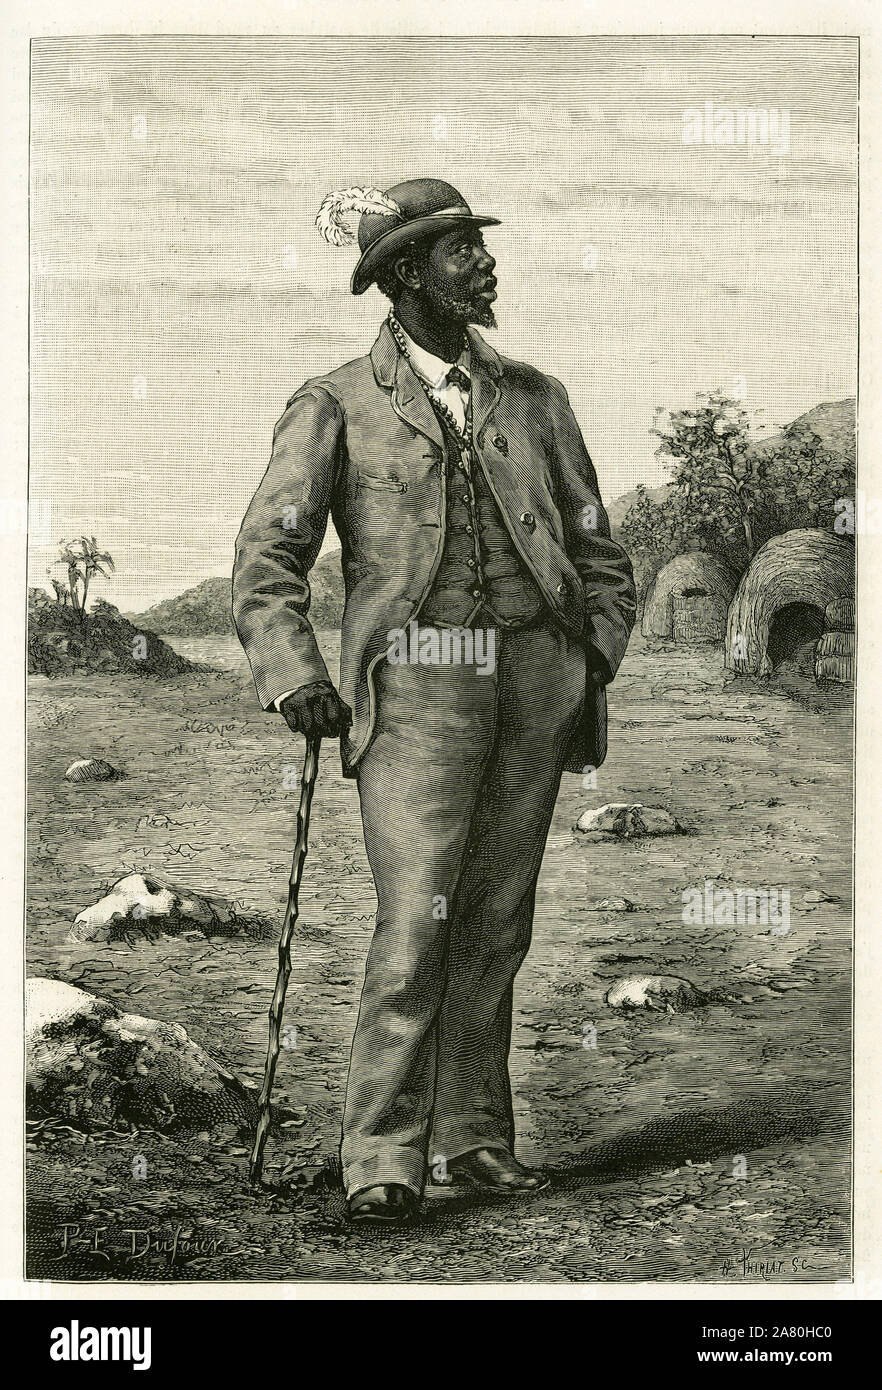 Portrait du roi Sepopo du Zambeze (actuelle Afrique du Sud), habille a l'europeenne, gravure de P. Dufour, pour illustrer le recit 'Au pays des Maruts Stock Photo